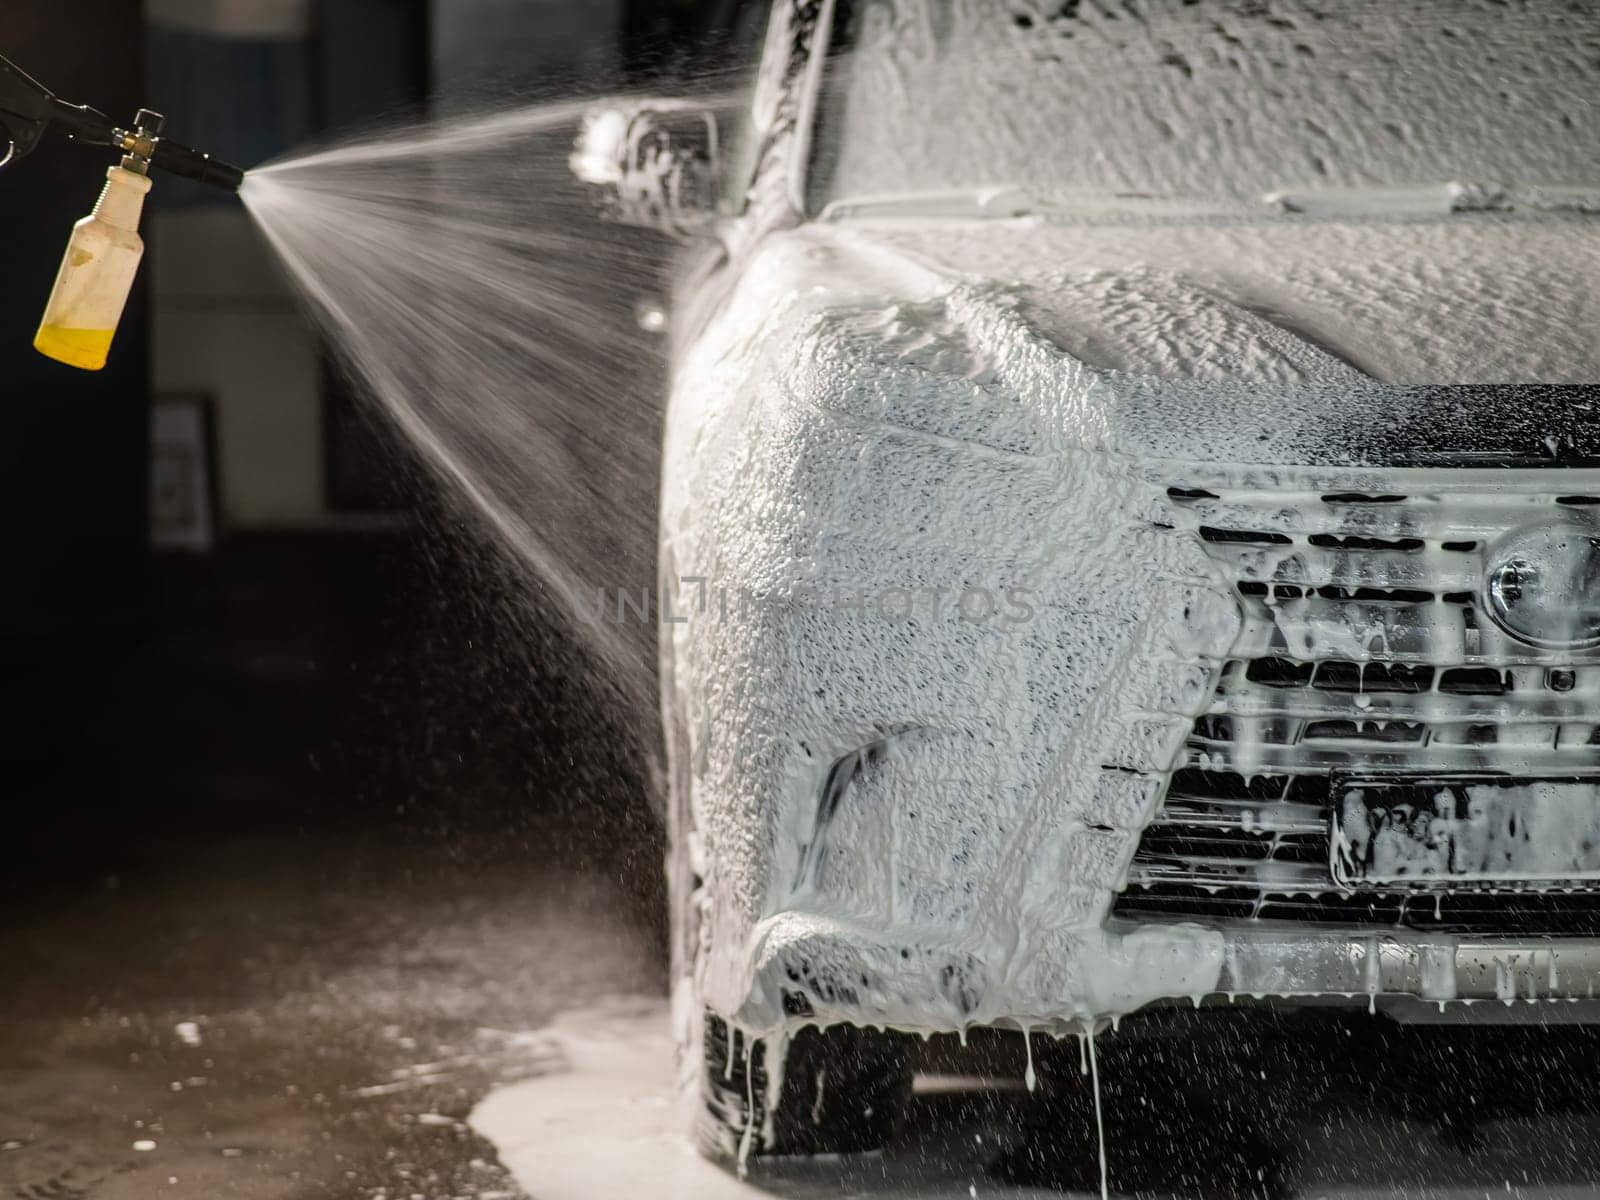 Man applying foam to black car in car wash